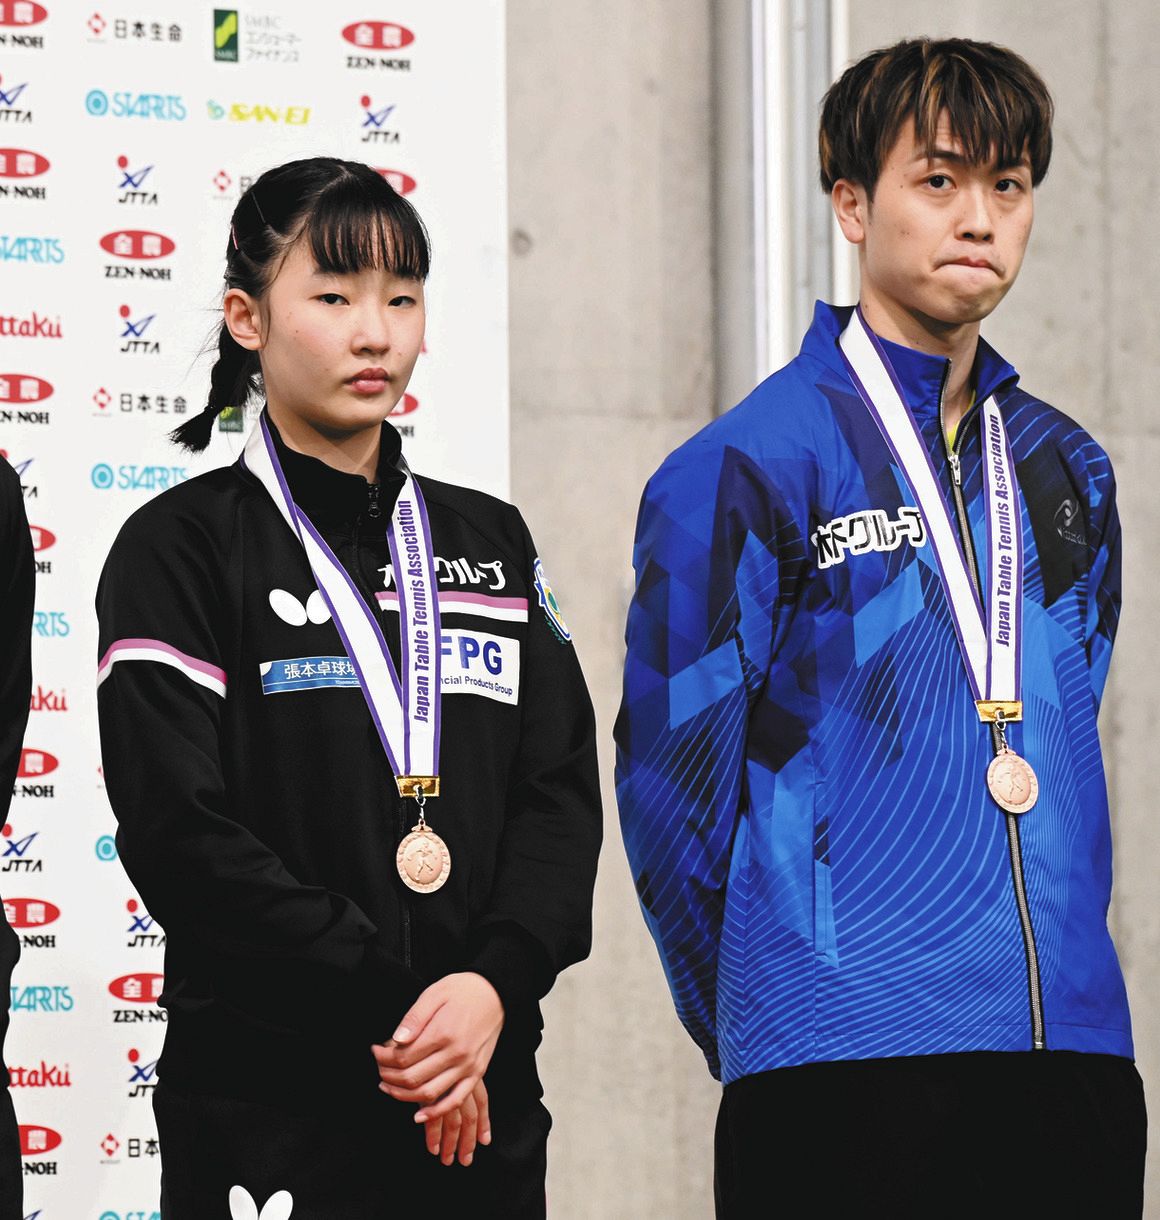 銅メダルを首から下げ、悔しげな表情を見せる張本・田添ペア